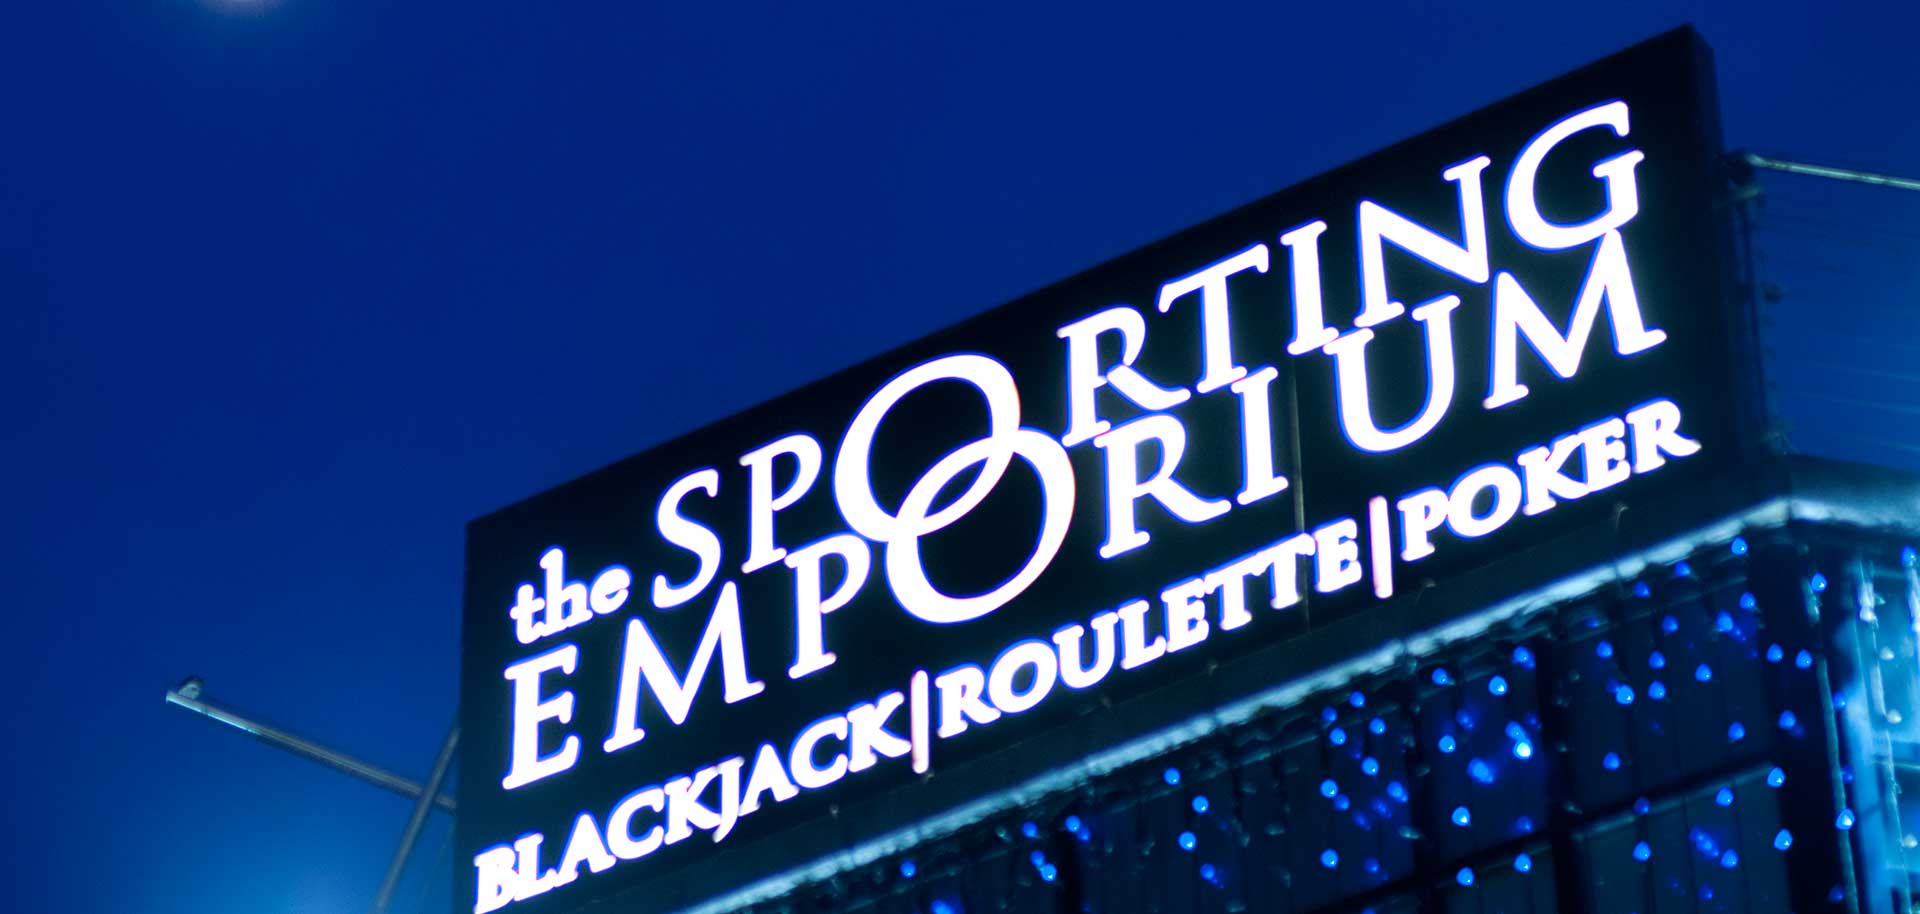 The Sporting Emporium Street Signage